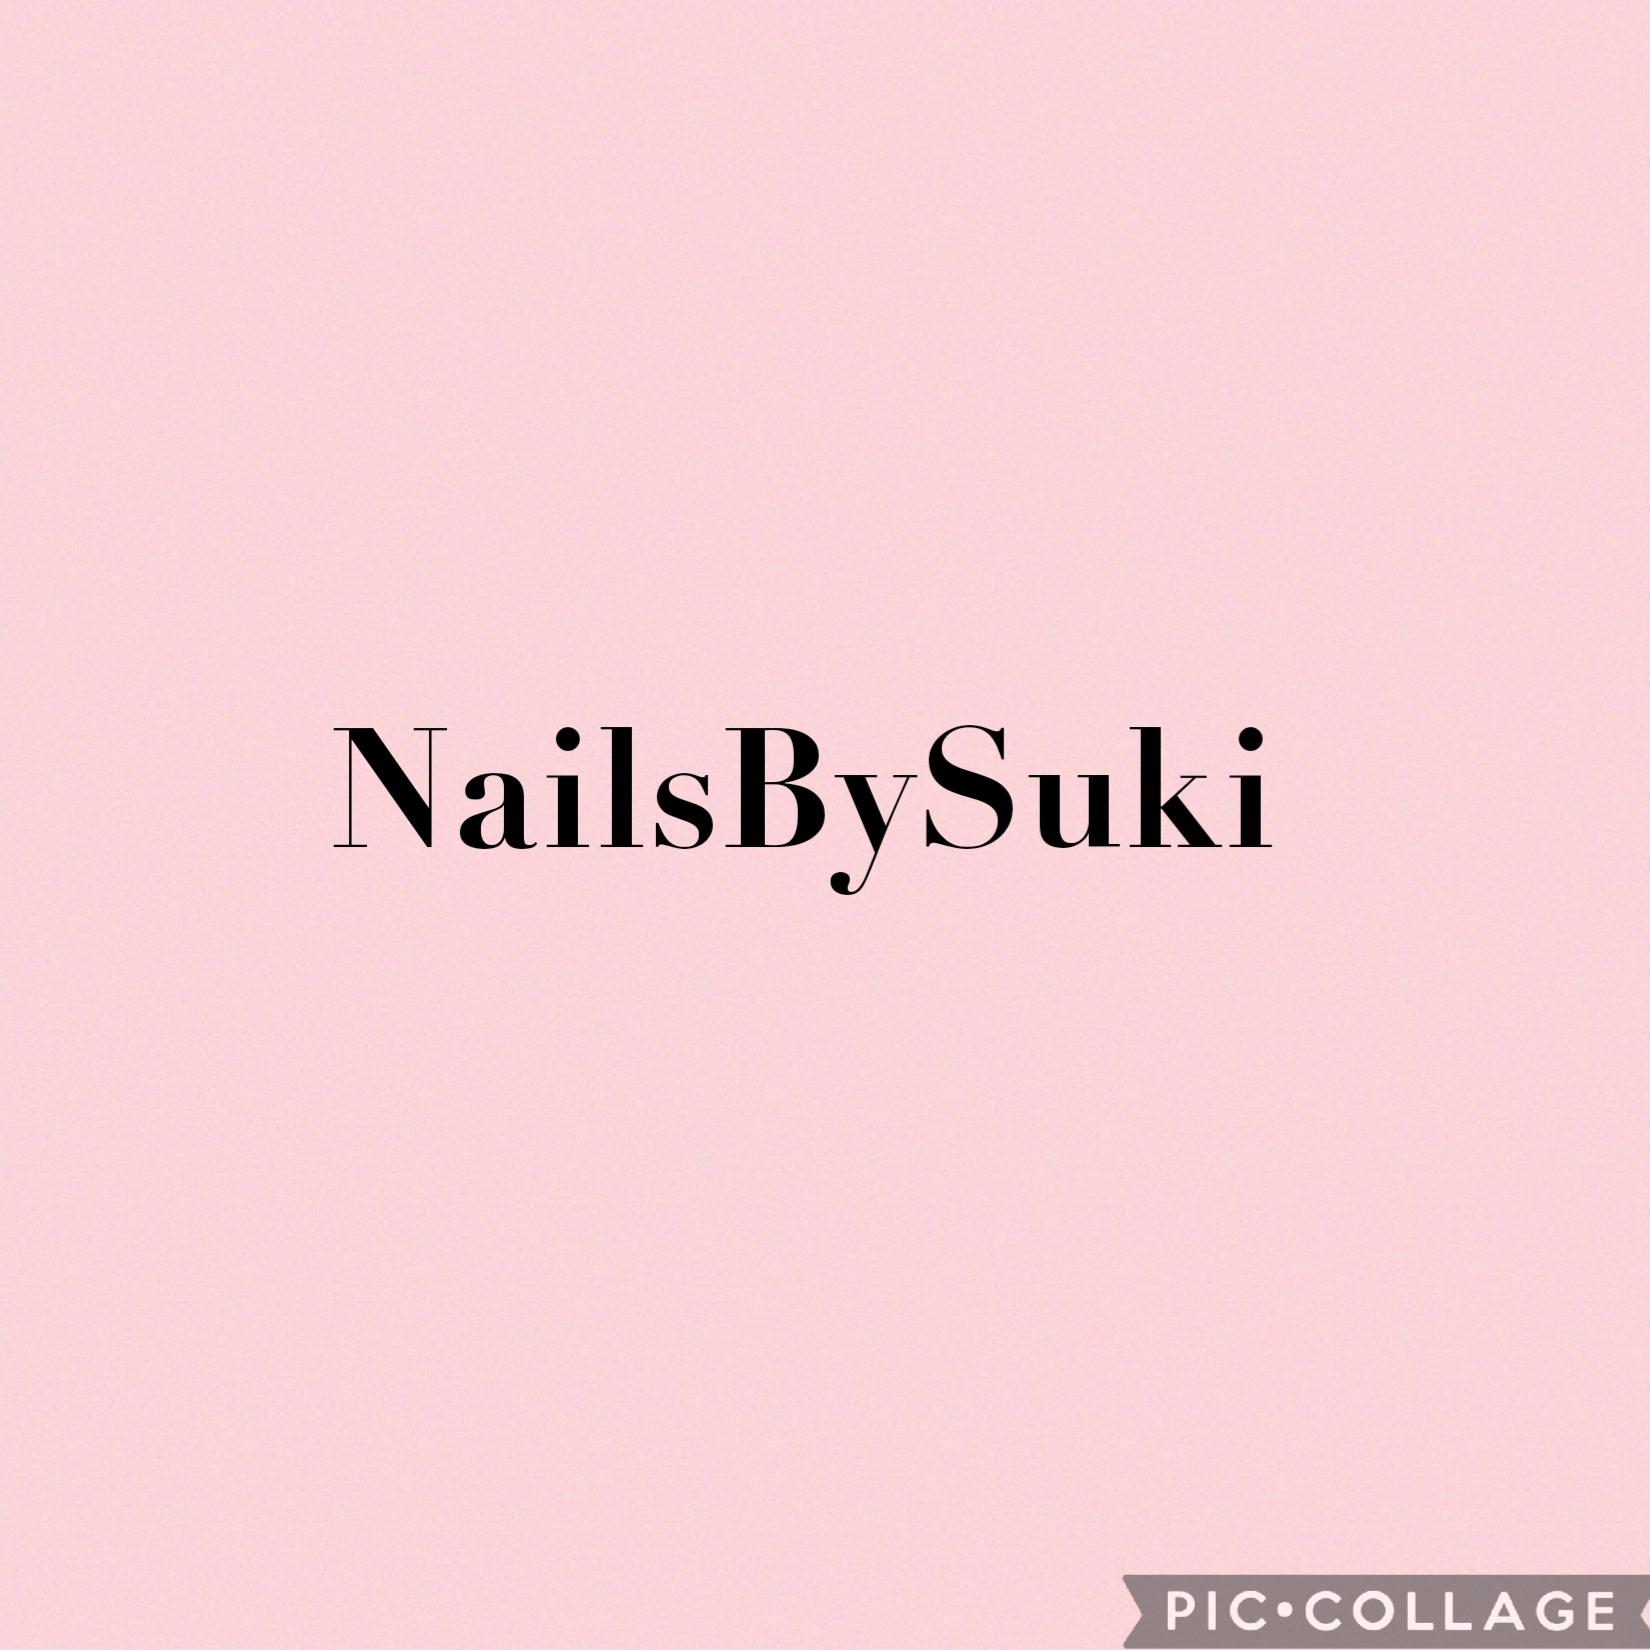 Suki K's images